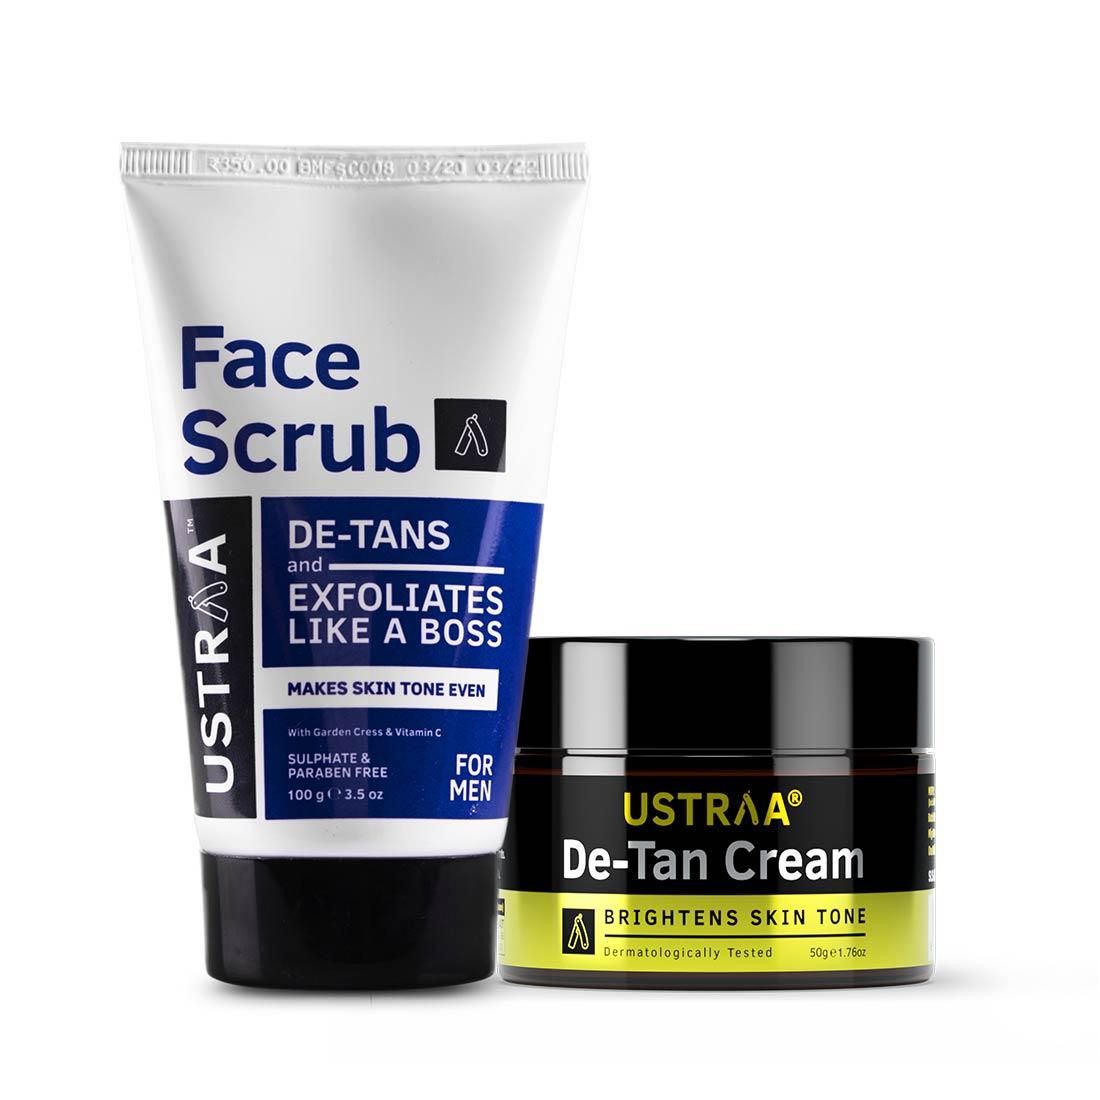 Ustraa De-Tan Kit for Complete Tan Removal with De-Tan Cream and De-Tan Face Scrub for Men